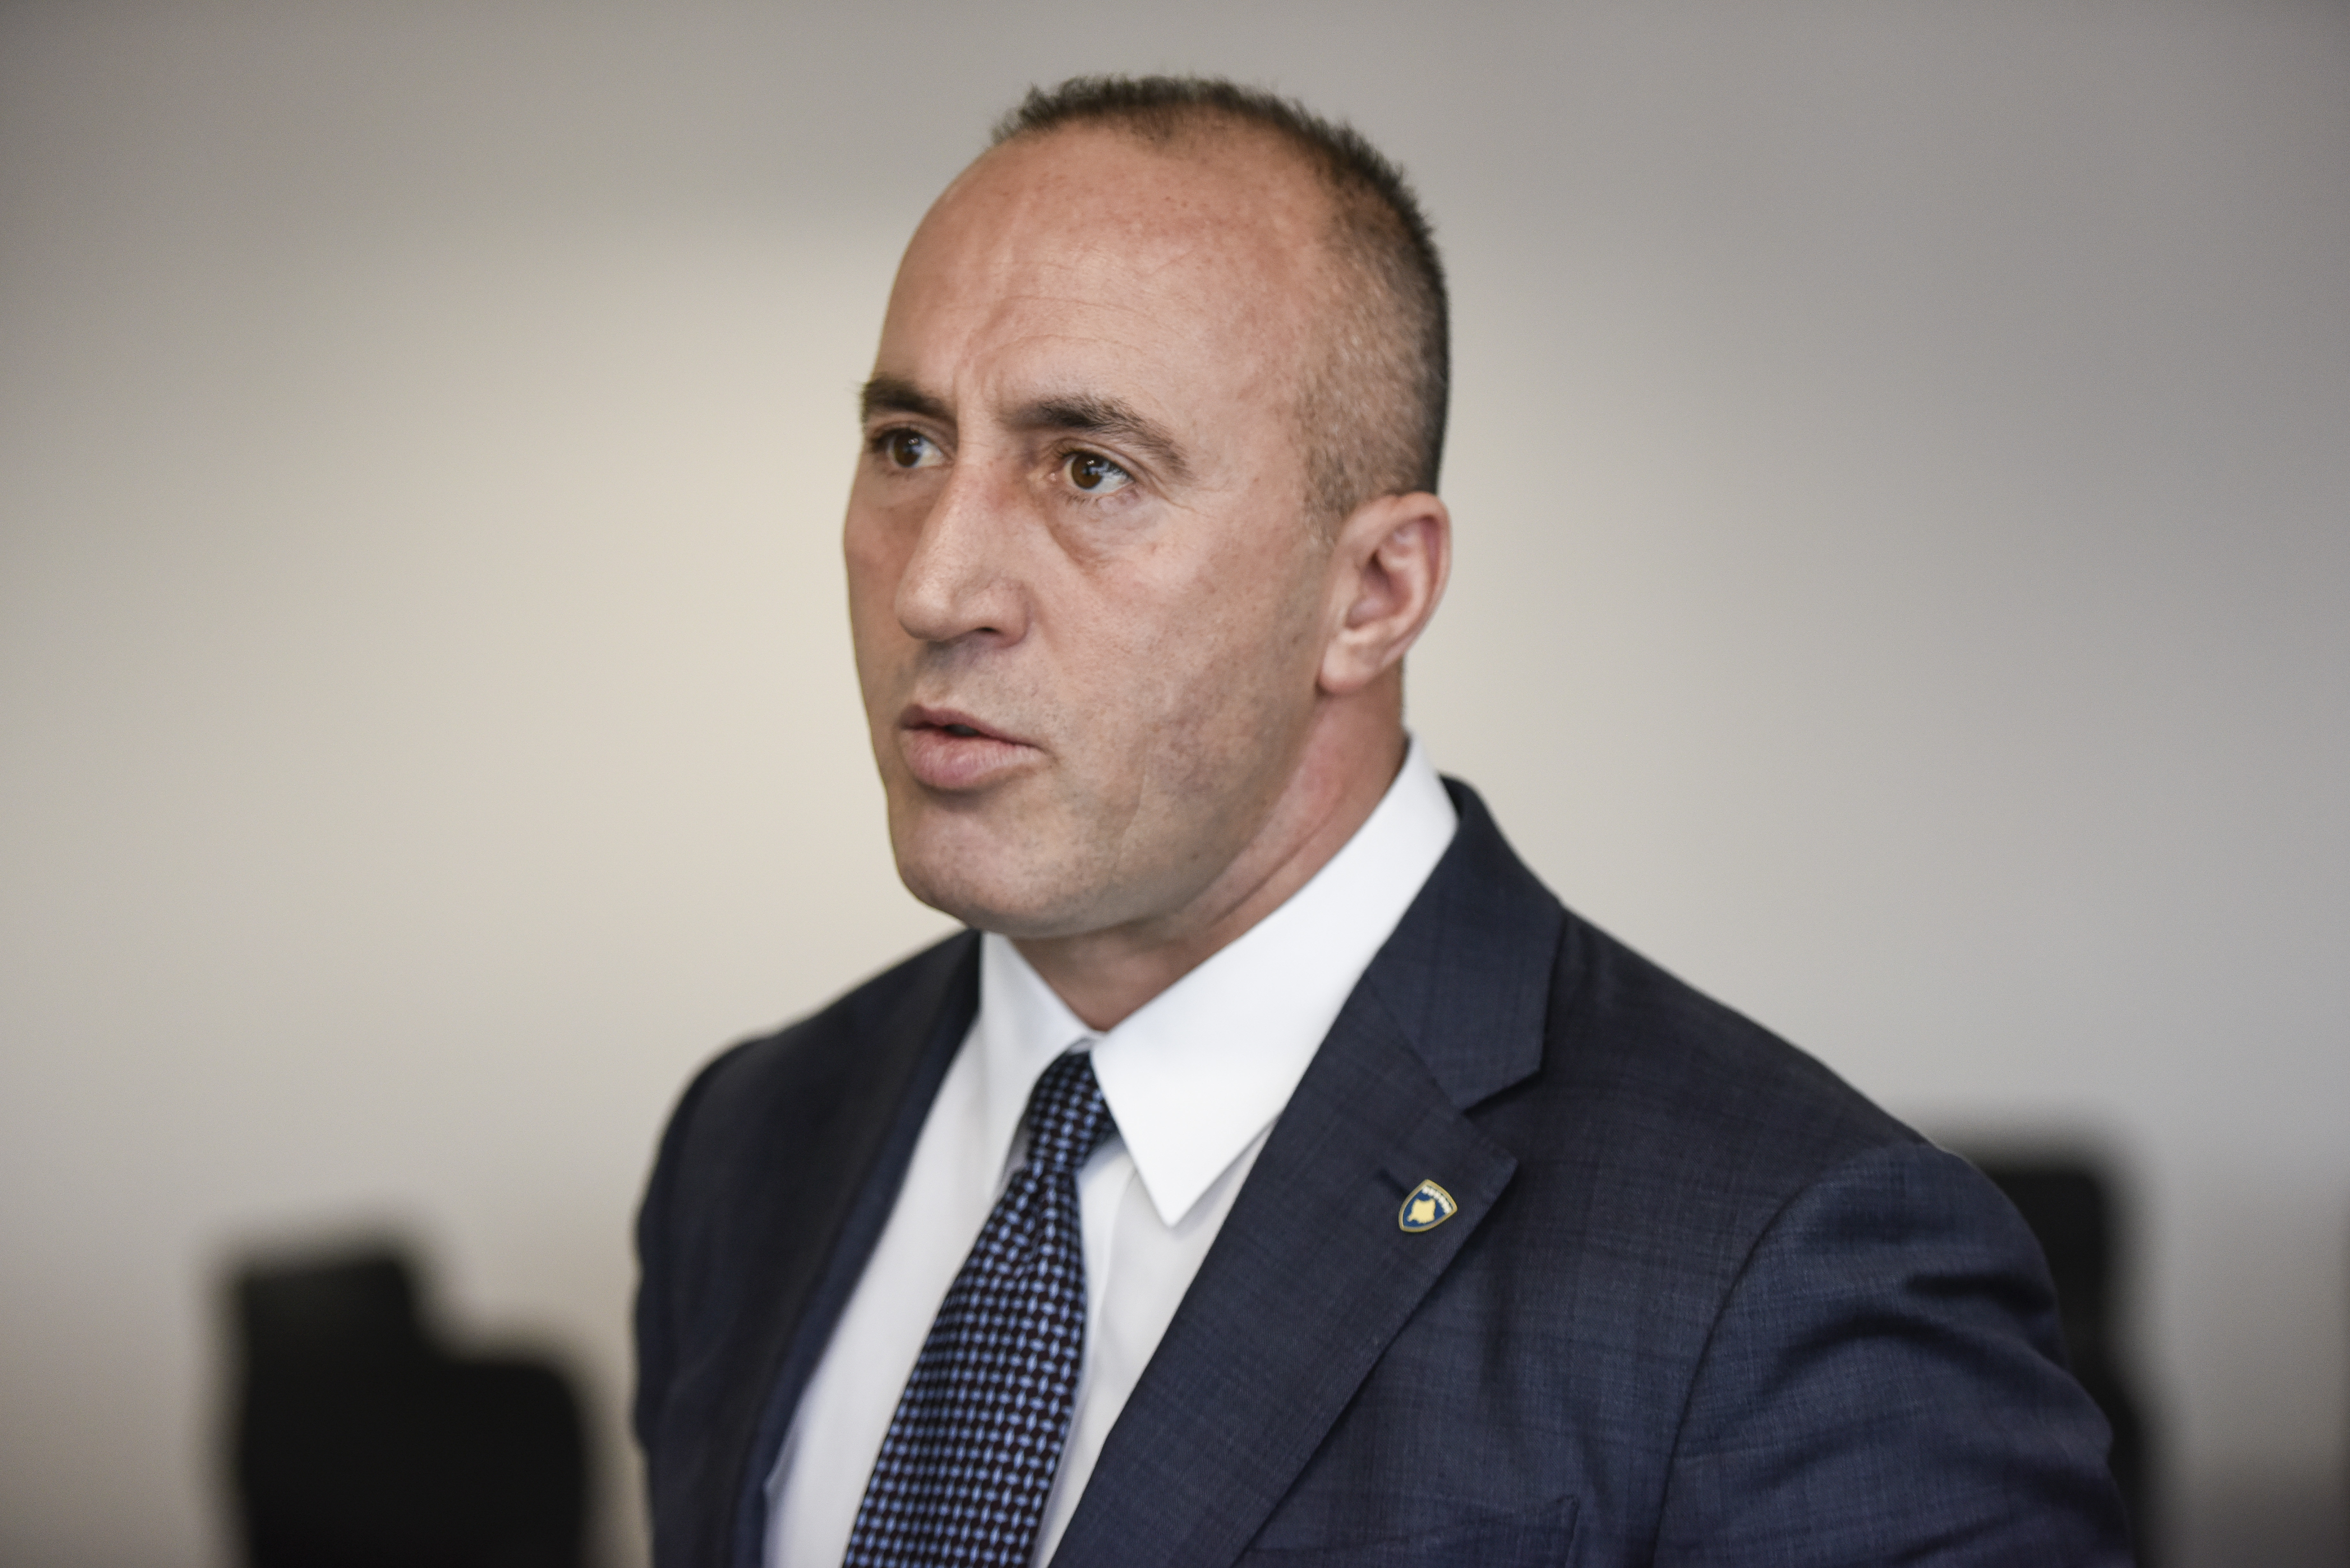 Háborús bűnökkel gyanúsítják, lemondott a koszovói miniszterelnök